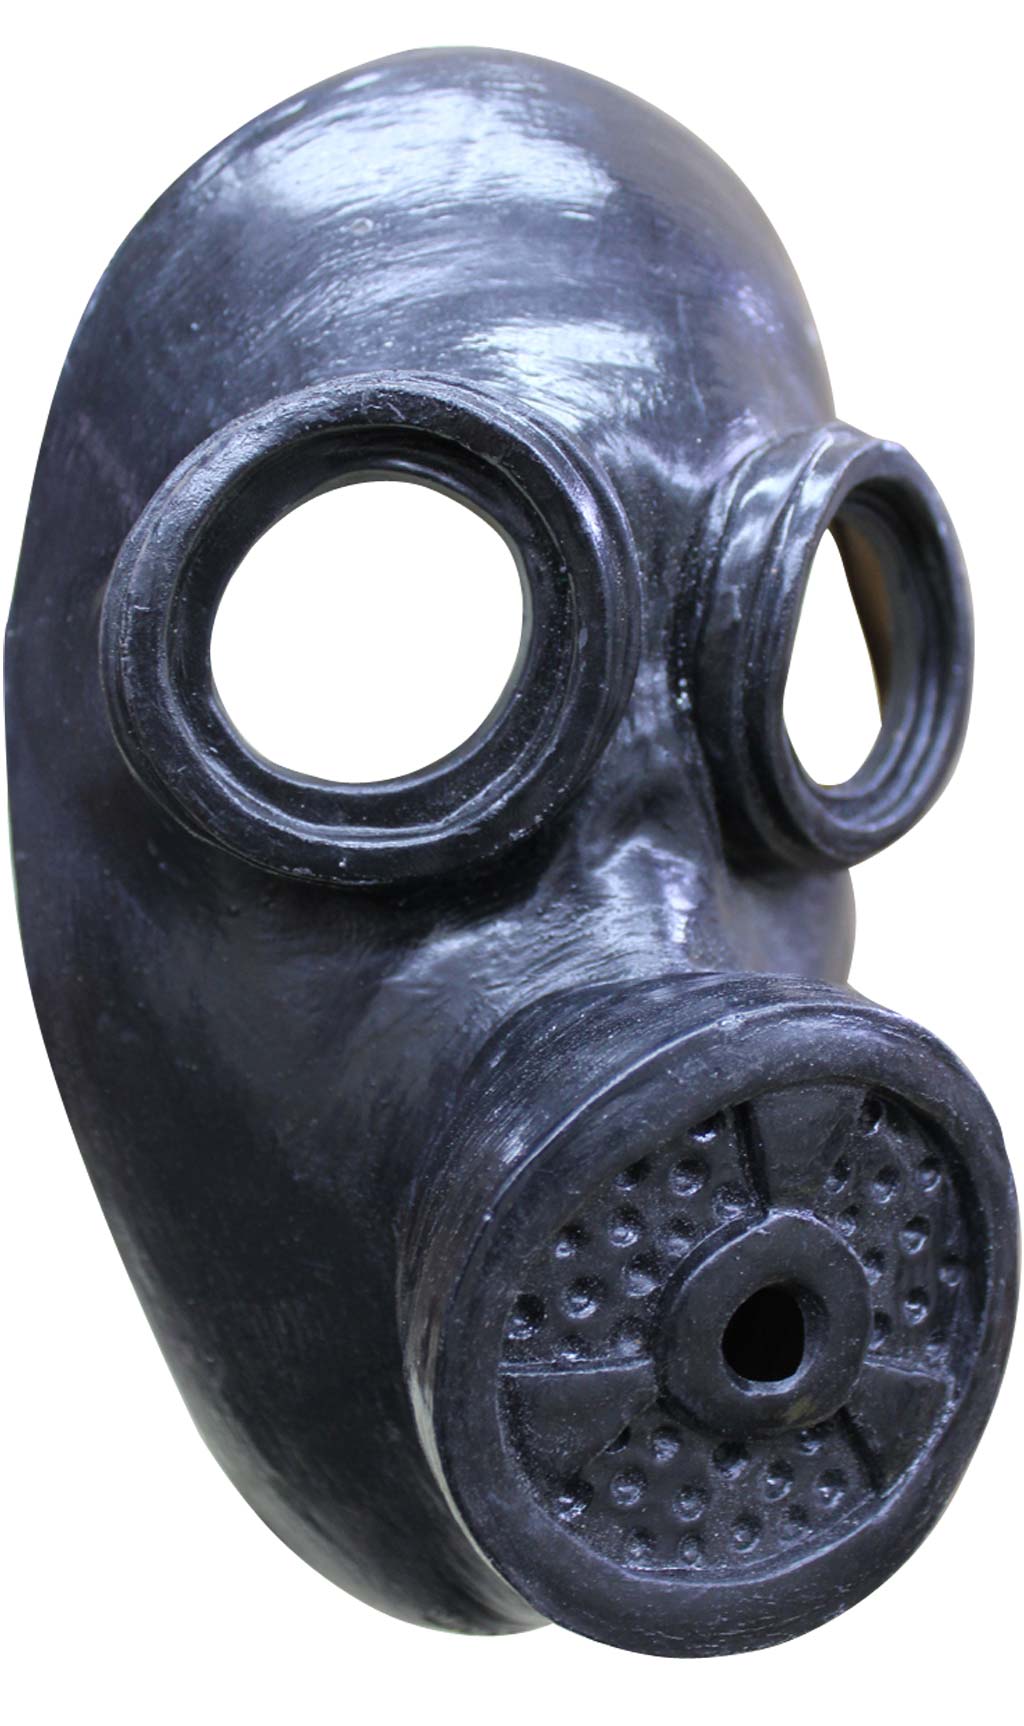 Gasschutzmaske aus Latex